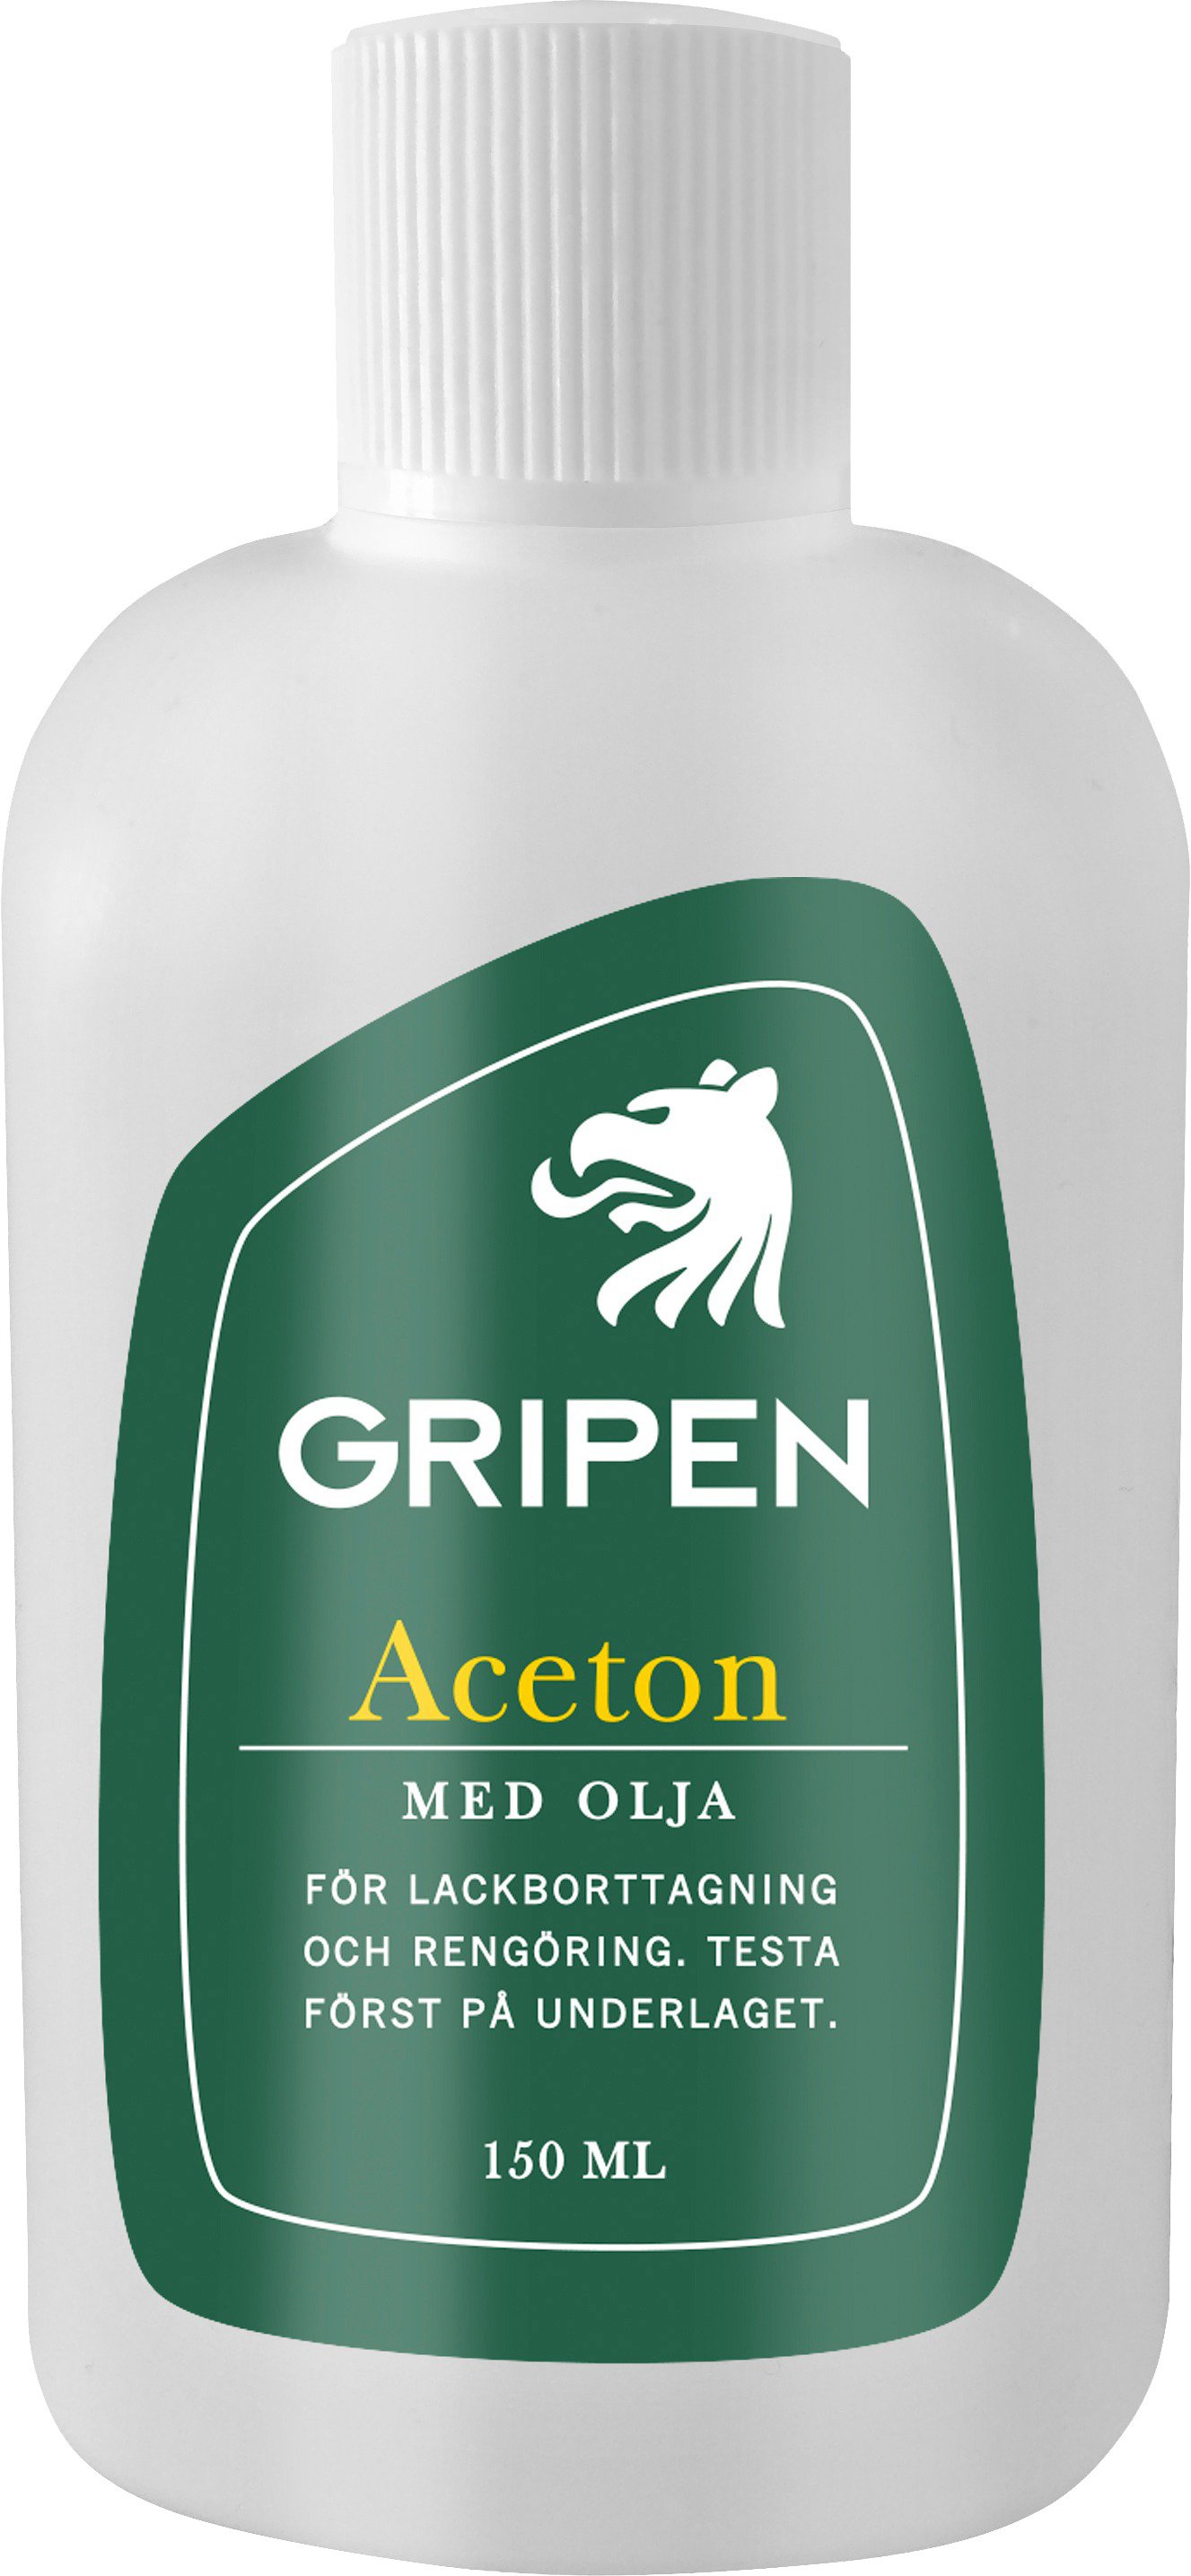 Gripen Aceton Med Olja 150 ml